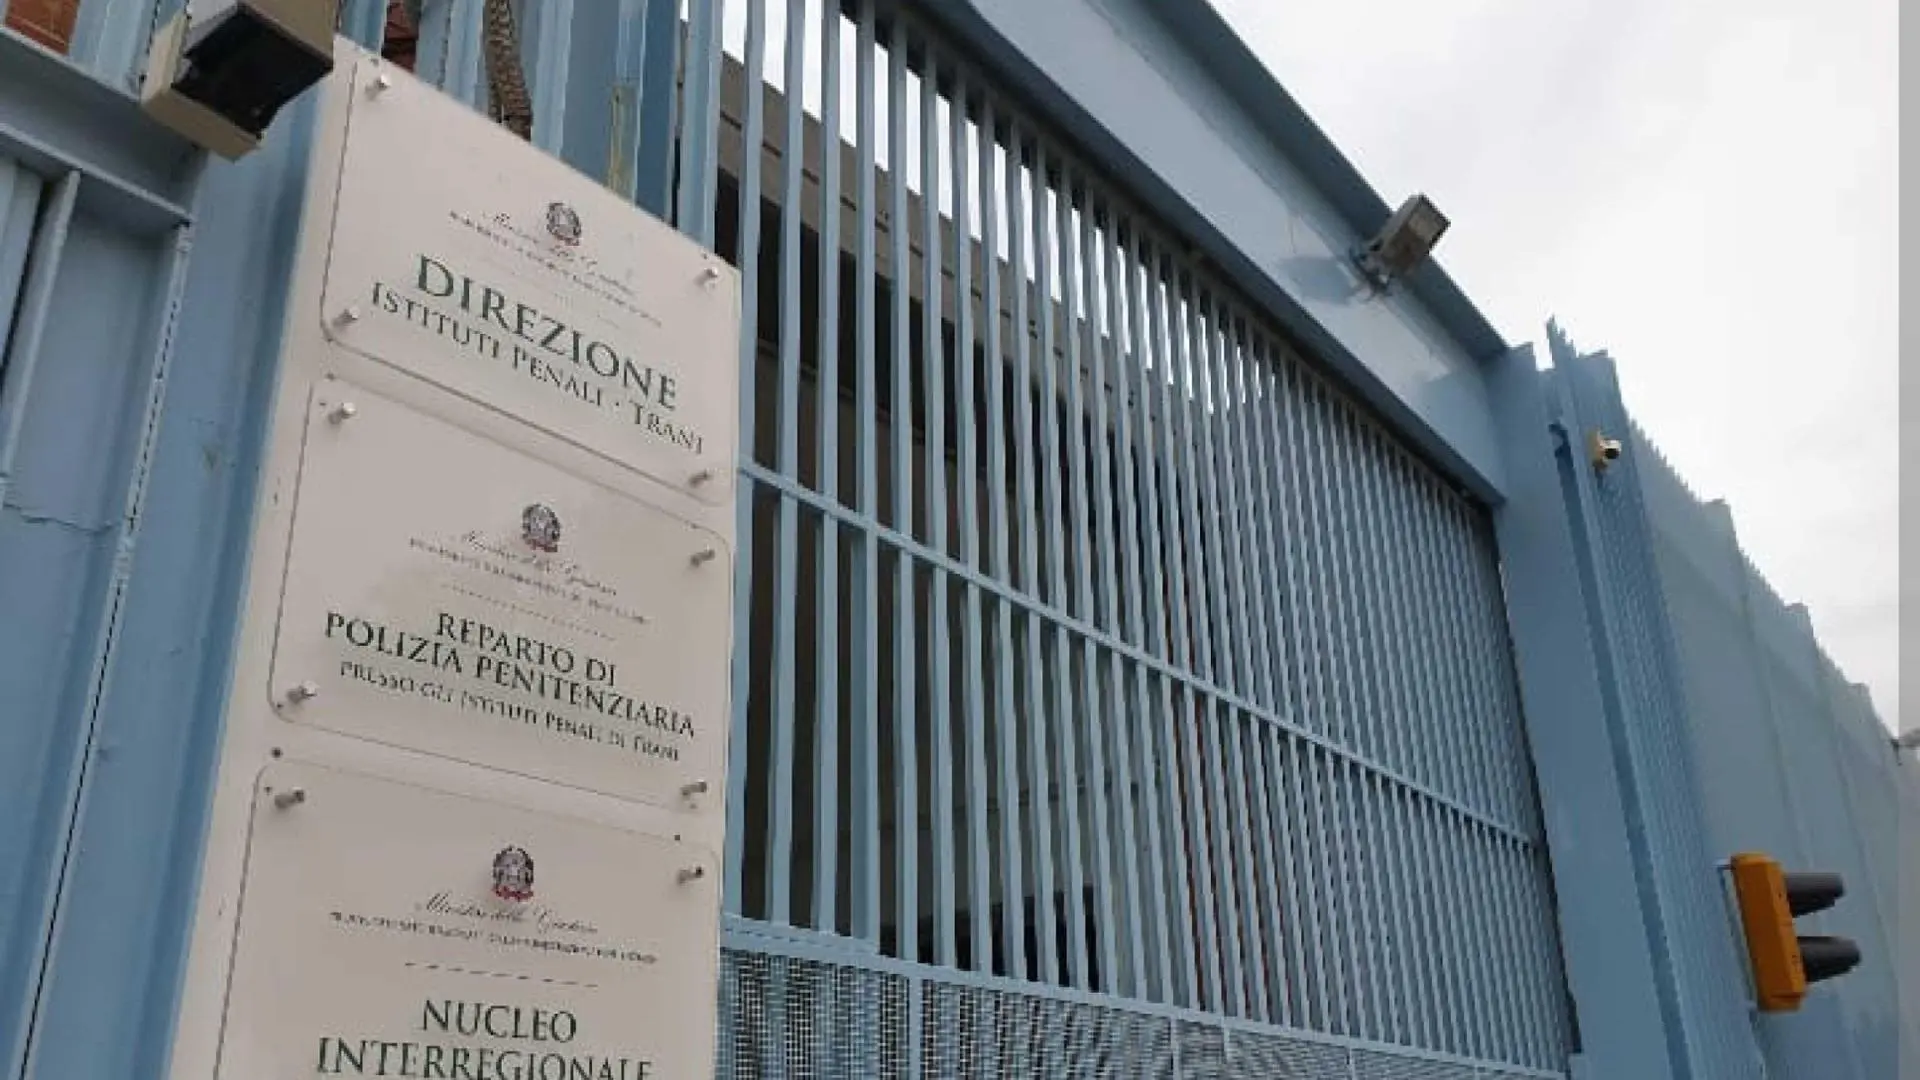 Duplice evasione da Trani, carceri in profonda emergenza - Comunicato stampa